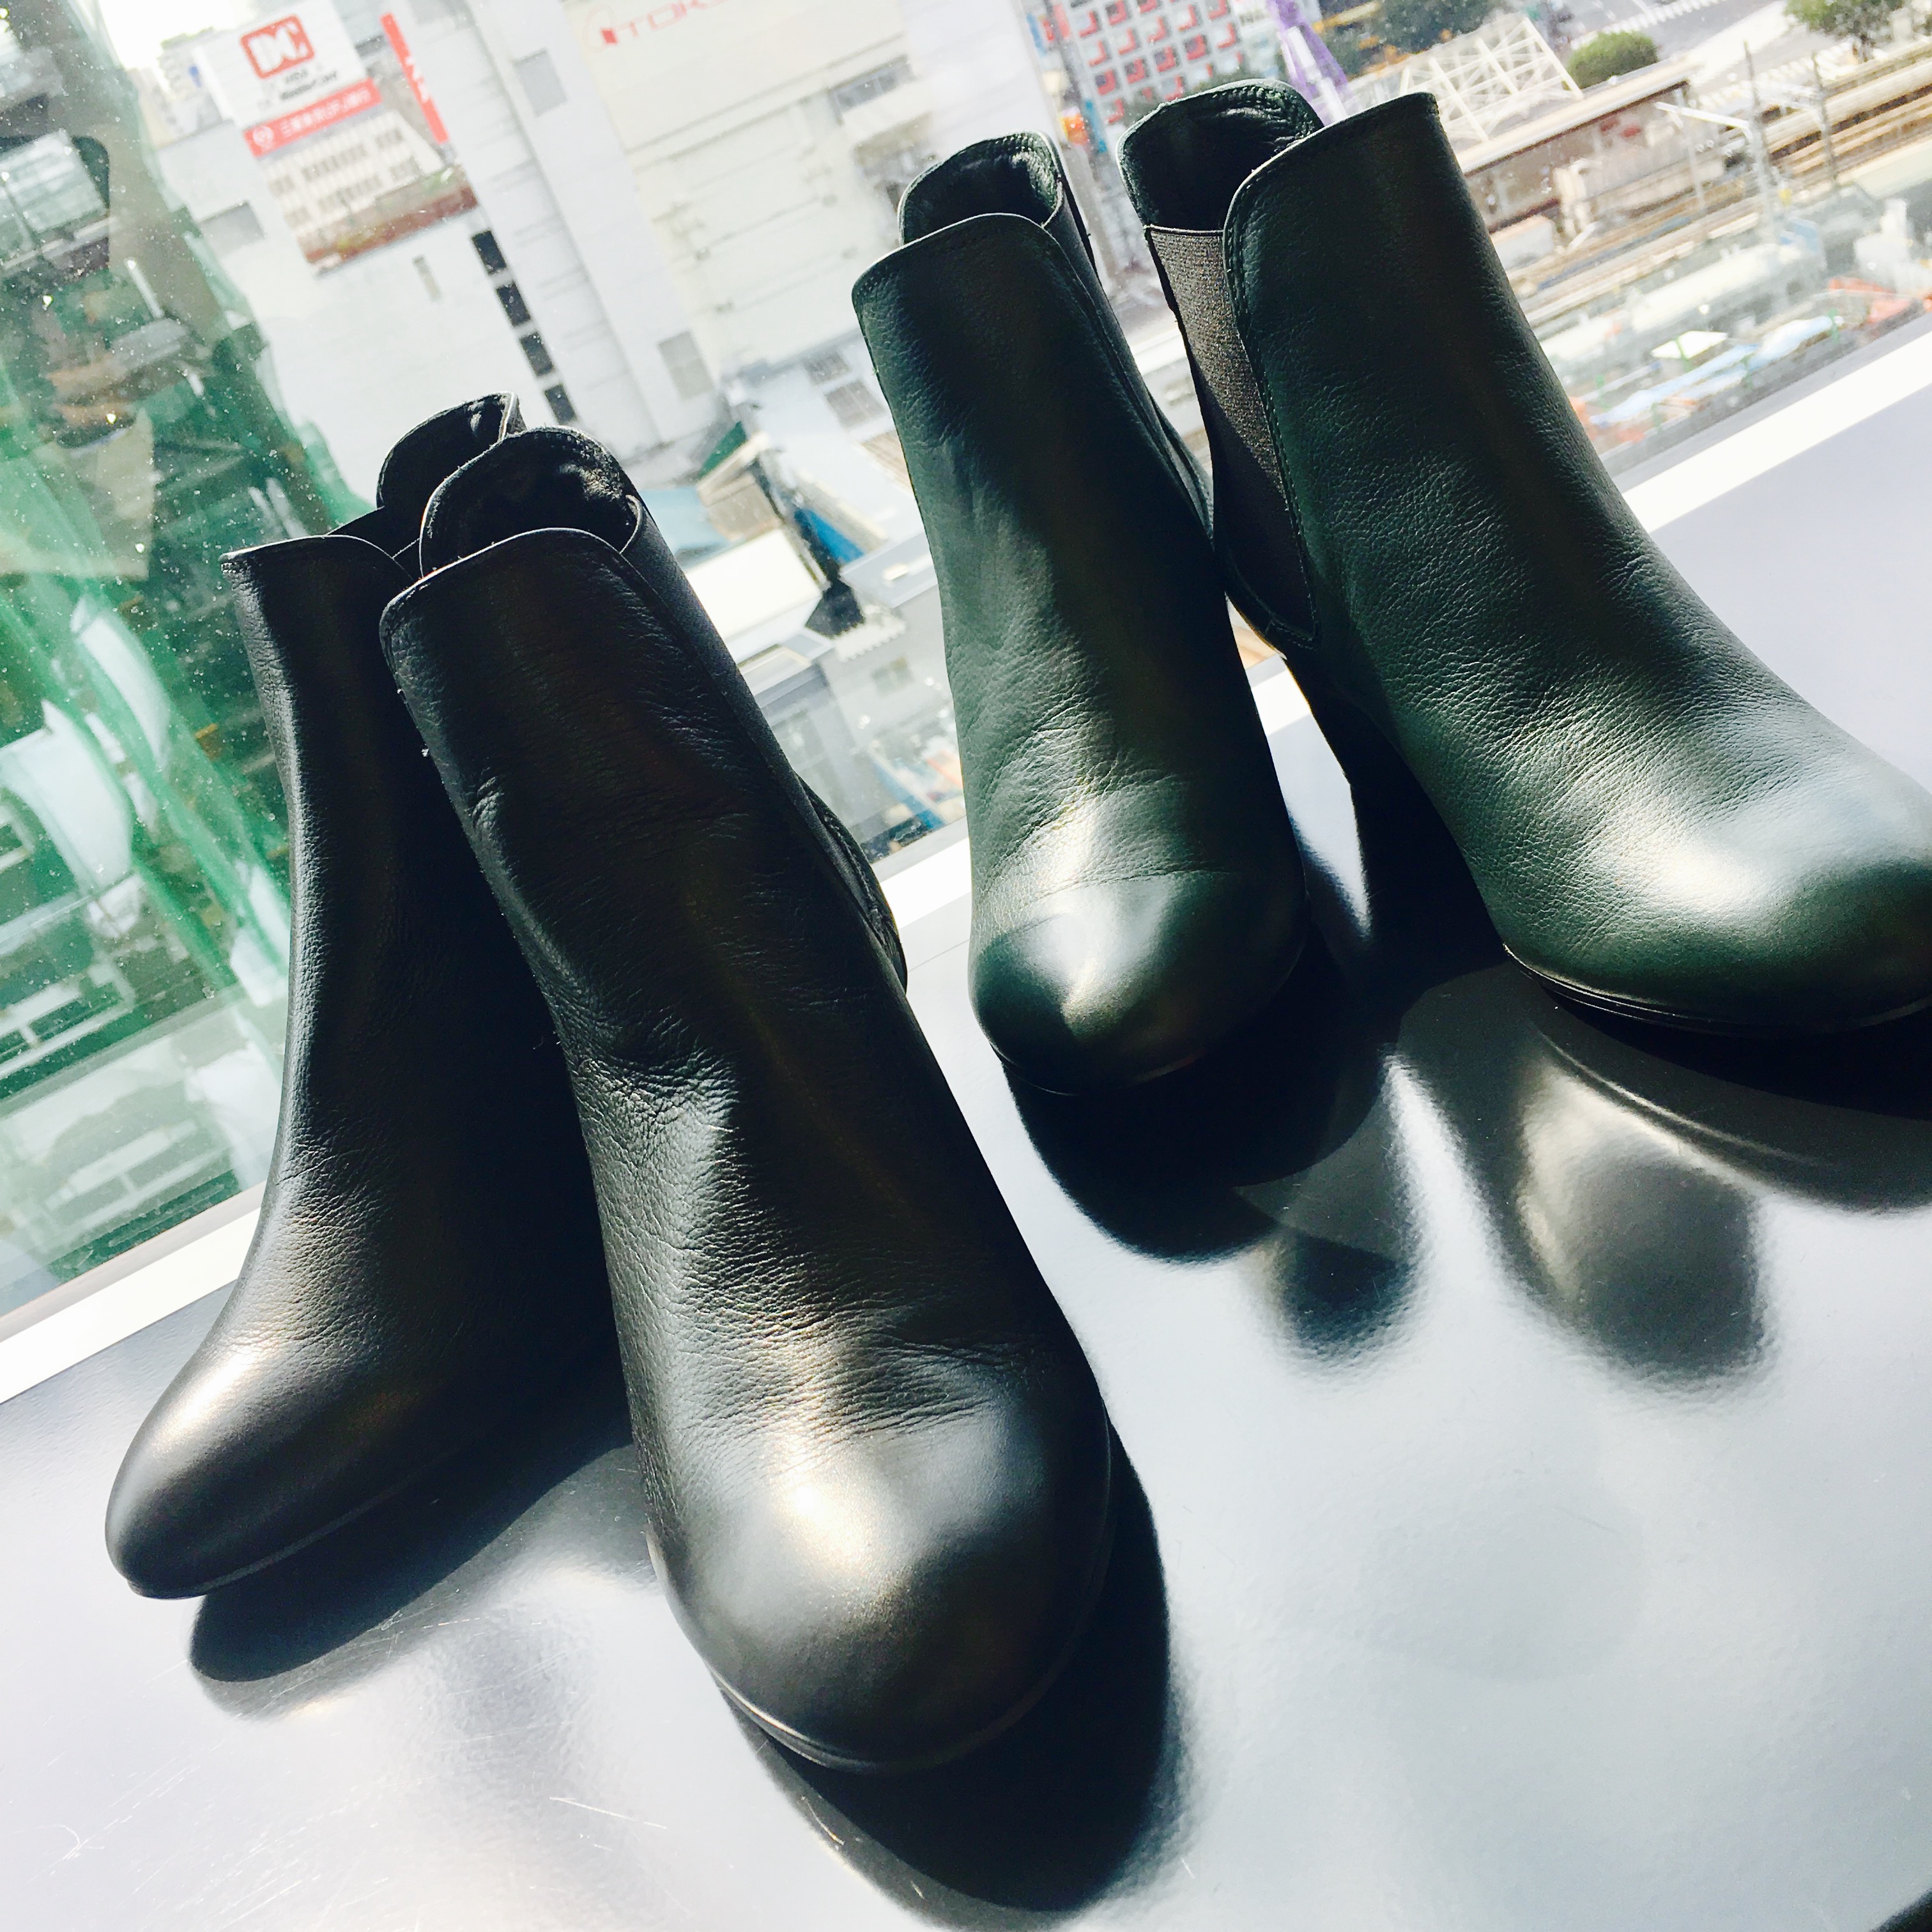 スクラップブック 渋谷 ファビオルスコーニ ブーツ boots 靴 